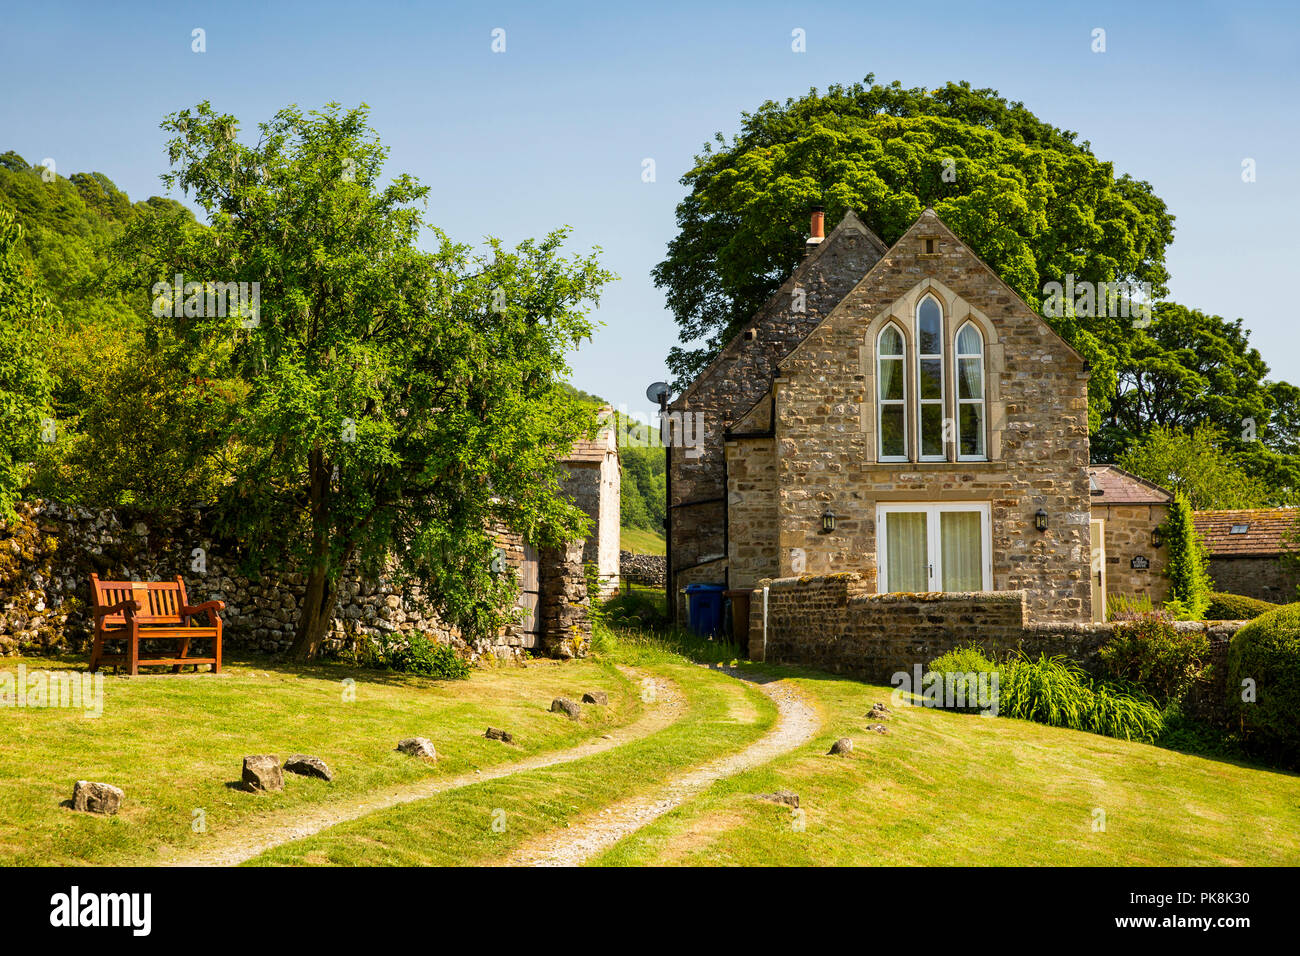 Reino Unido, Yorkshire, Wharfedale, Starbotton, La Casa de la vieja escuela, atractiva casa de piedra Foto de stock